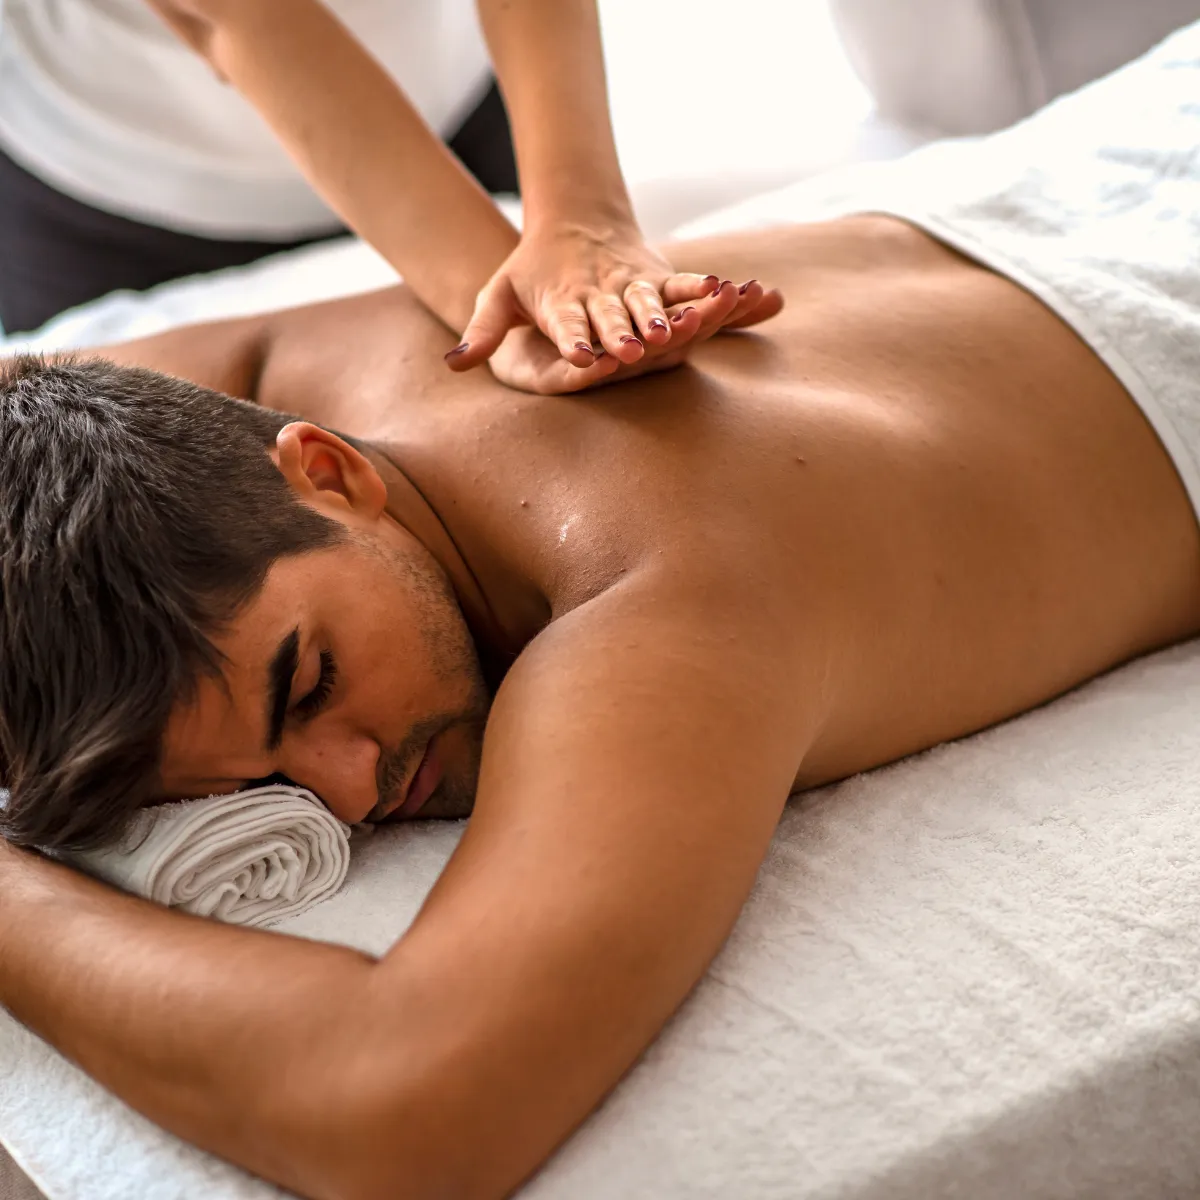 masaje de relajación muscular, transporte de oxígeno y eliminación de toxinas